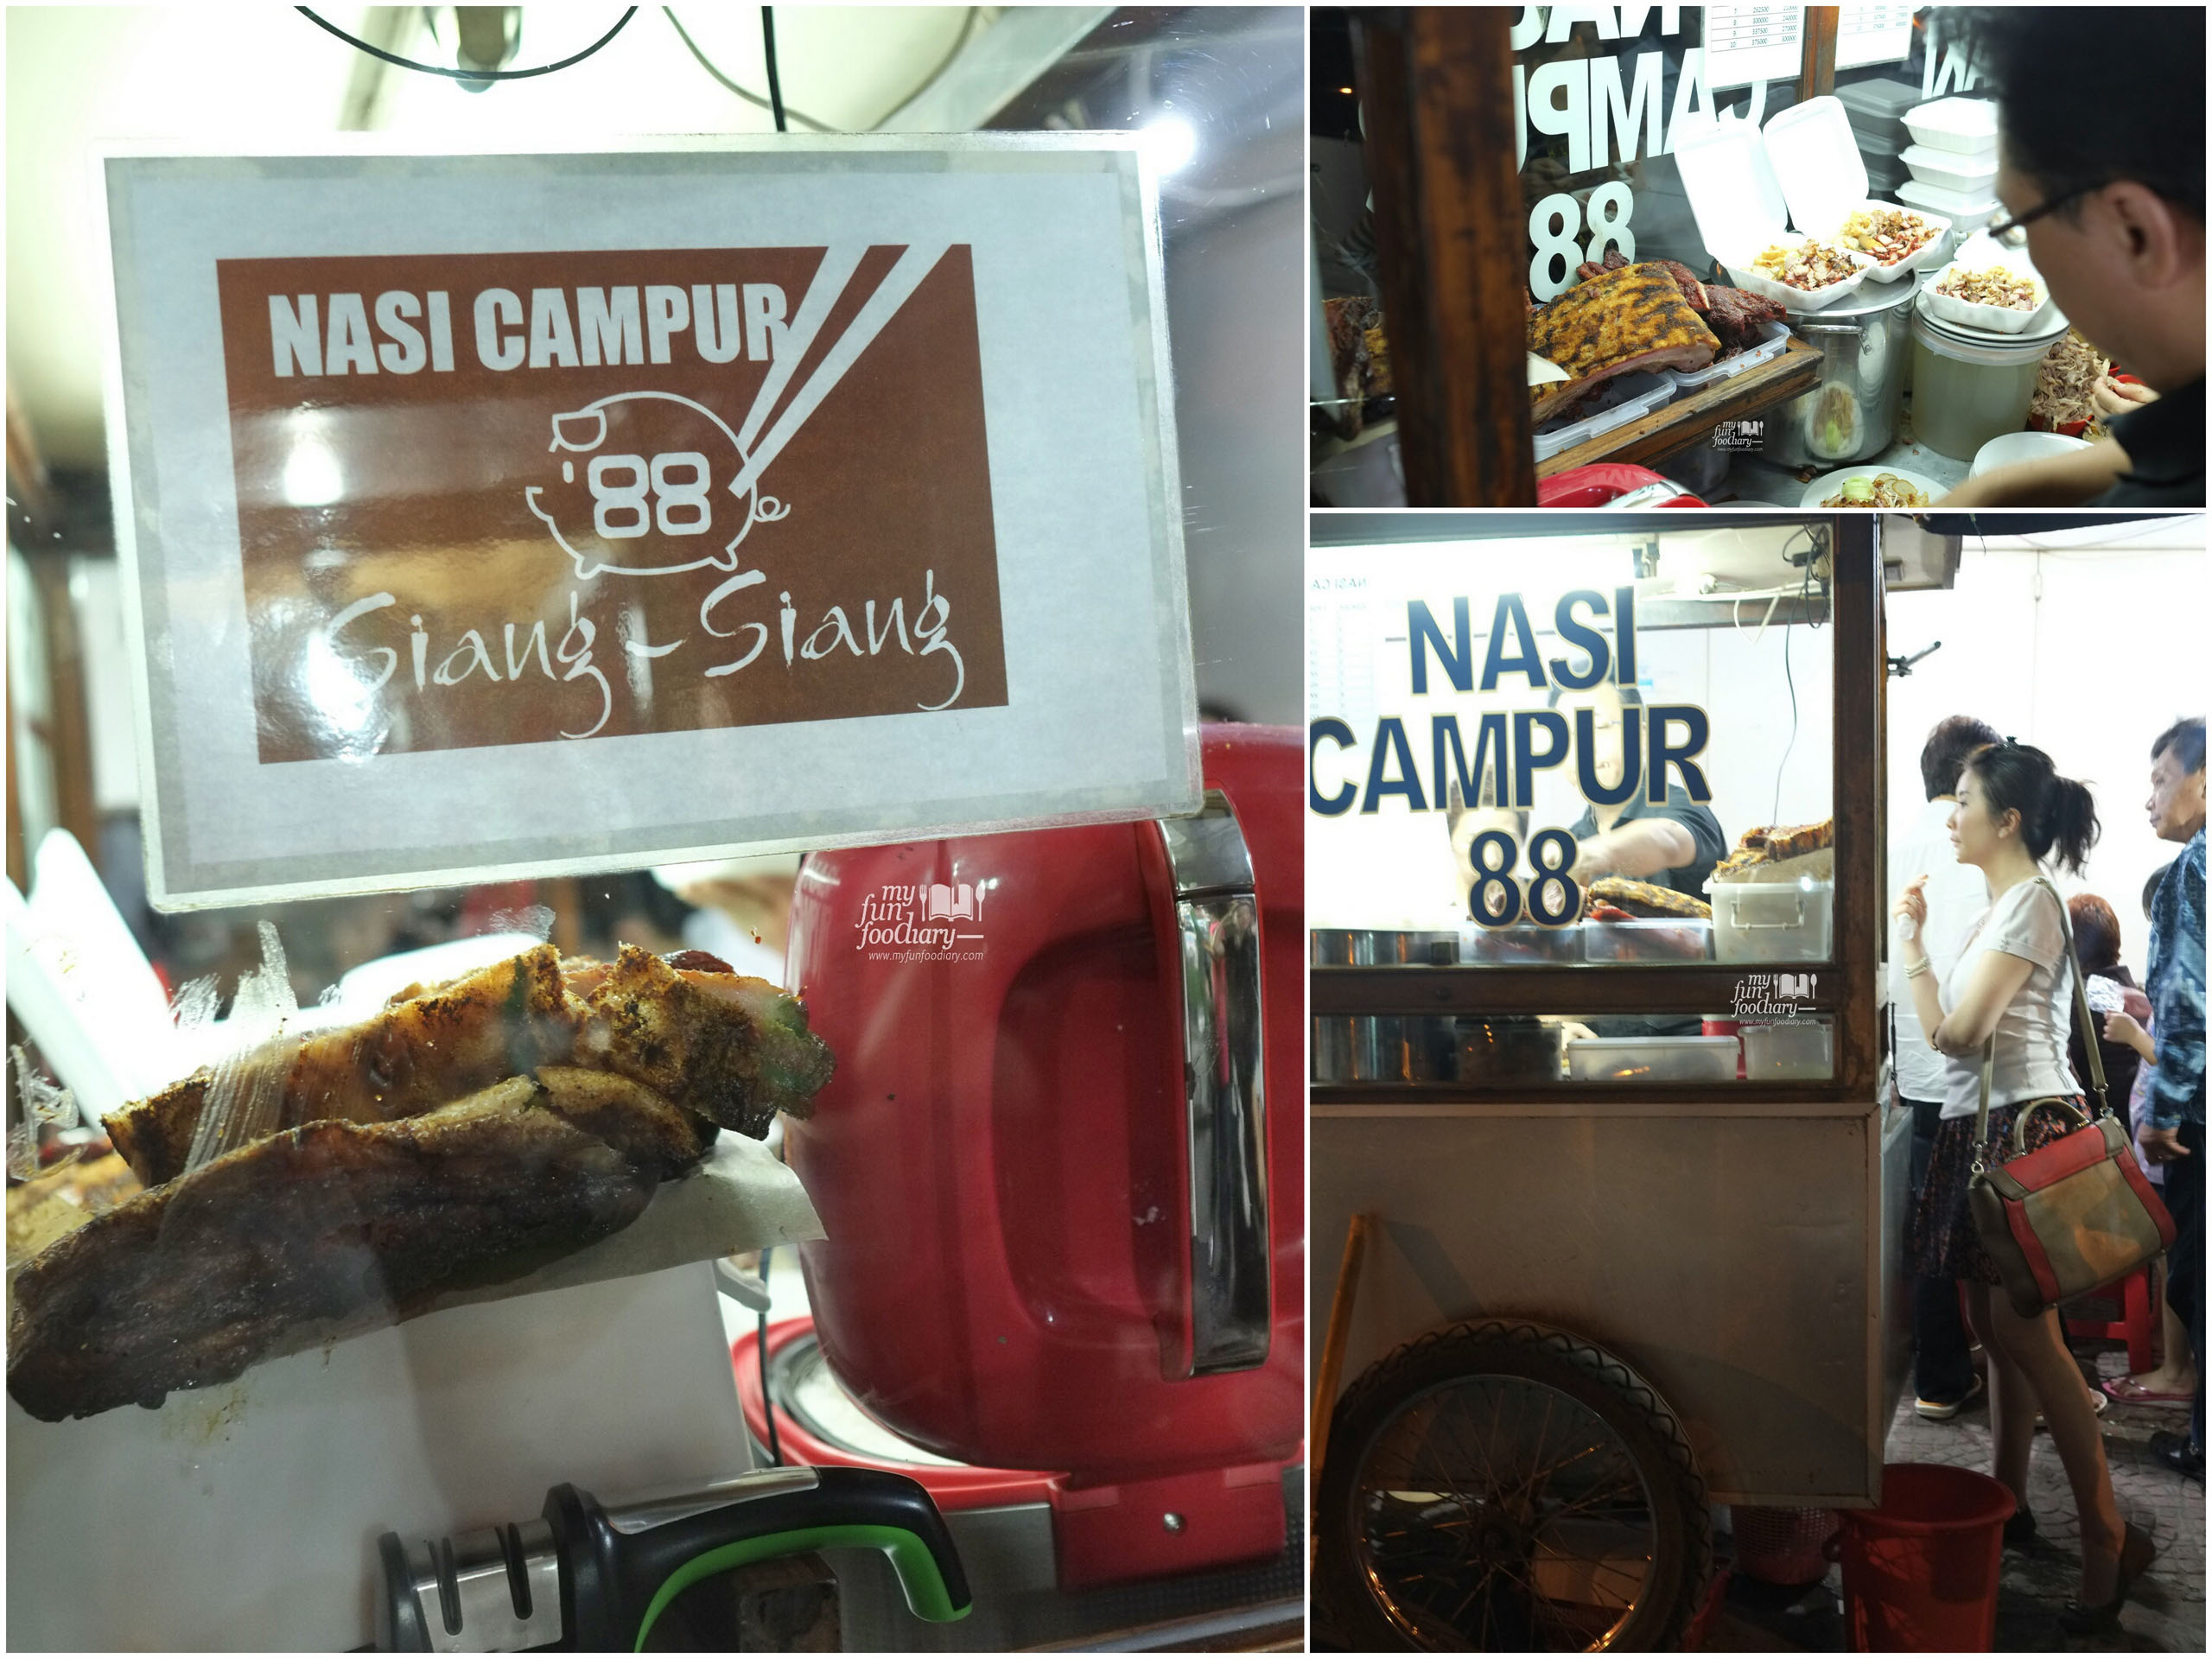 Nasi Campur 88 Asiang Bandung by Myfunfoodiary collage